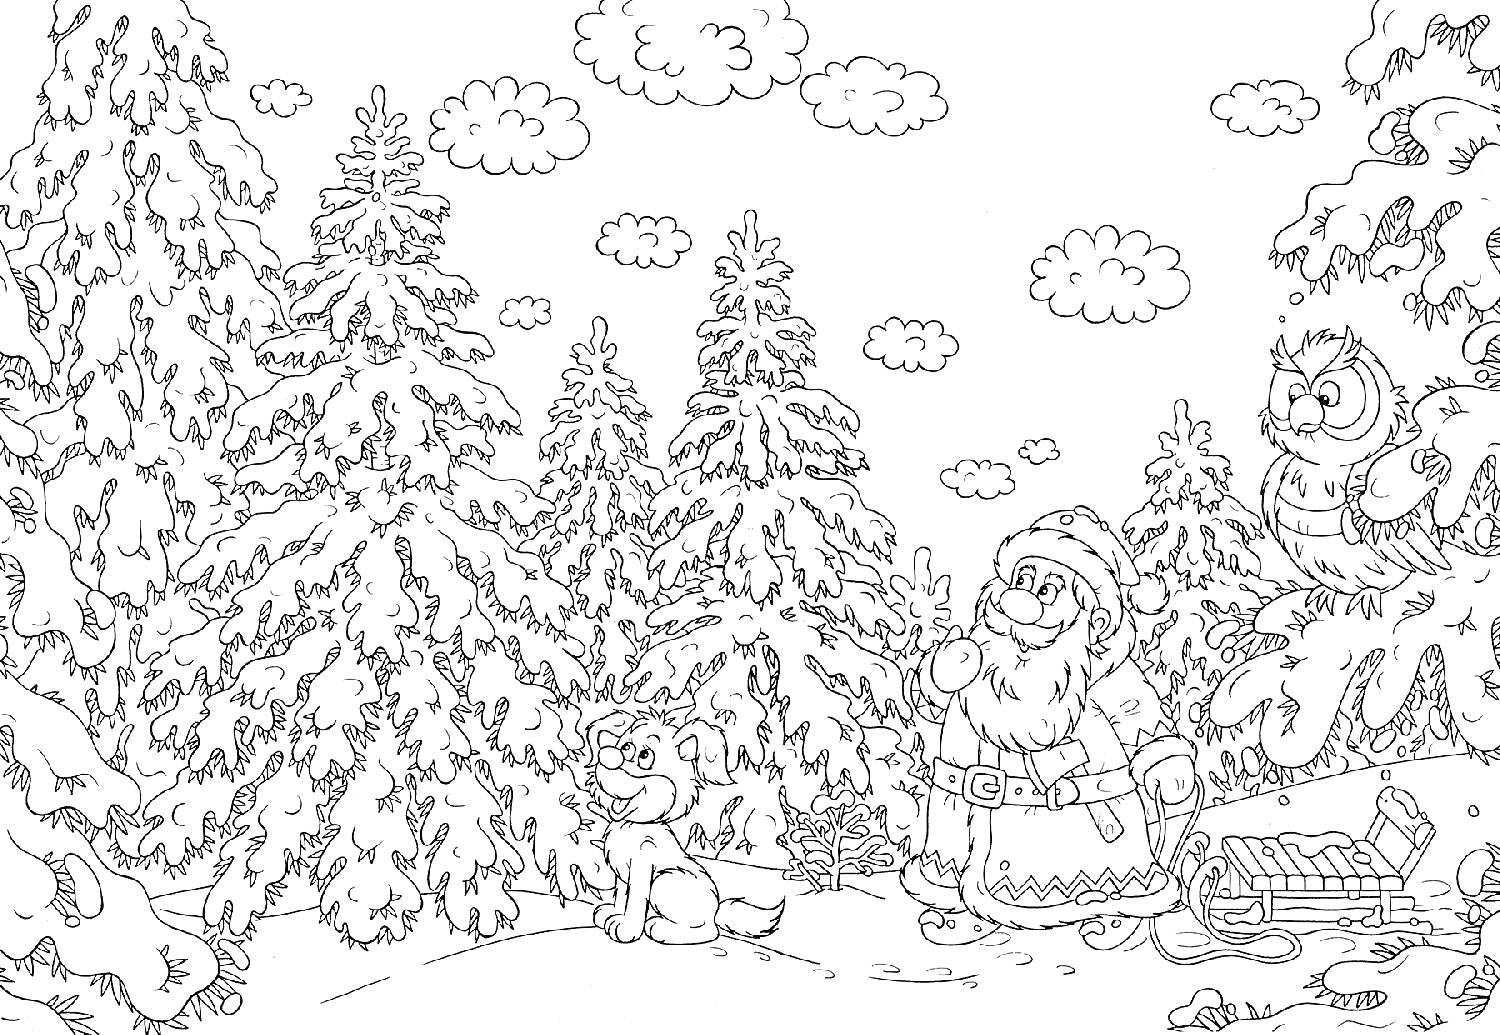 Дед Мороз в зимнем лесу с белкой, лягушкой и совой.